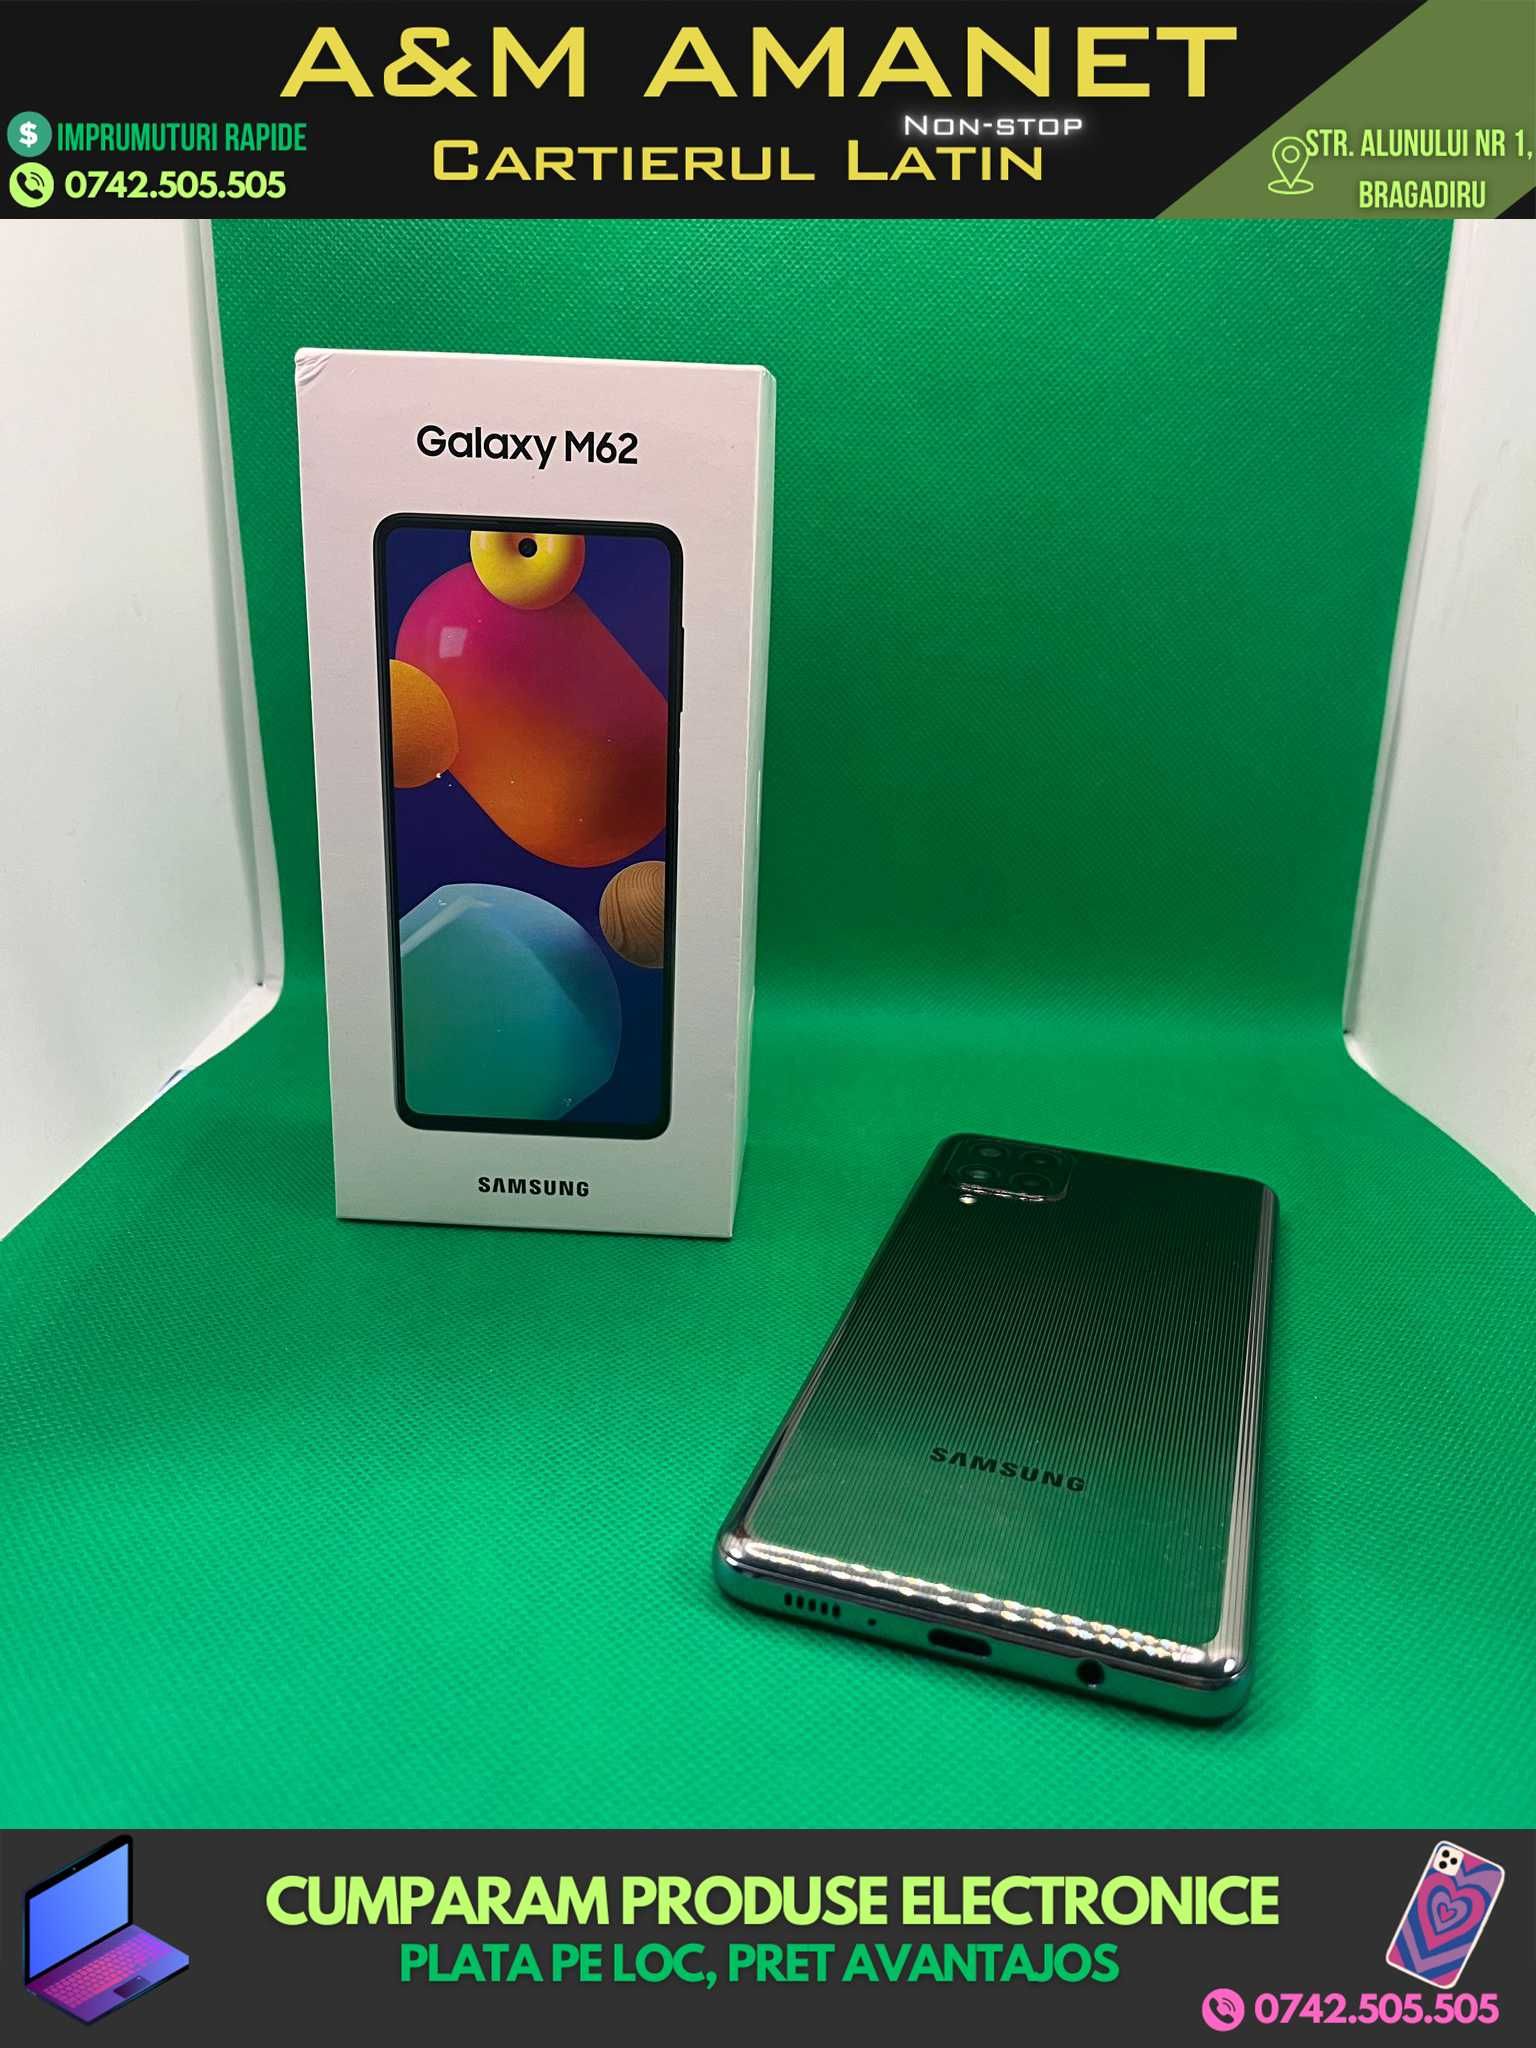 Samsung Galaxy M62, 8/256GB, Black, Fullbox (A&M AMANET)